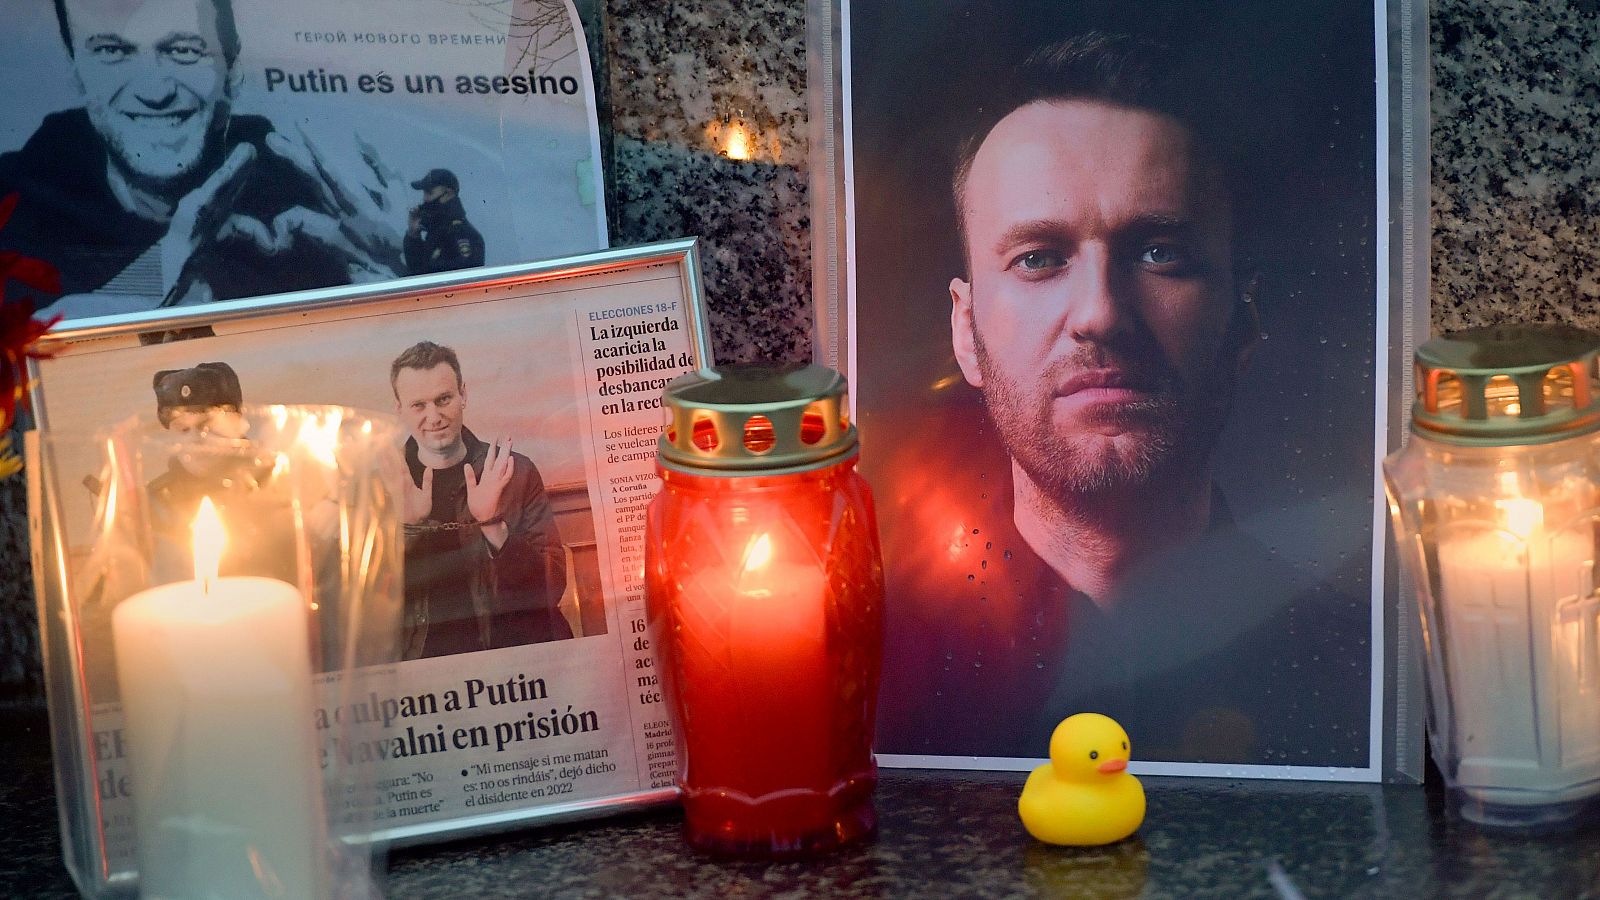 Altar en homenaje al opositor ruso Alexéi Navalni en Gijón, Asturias